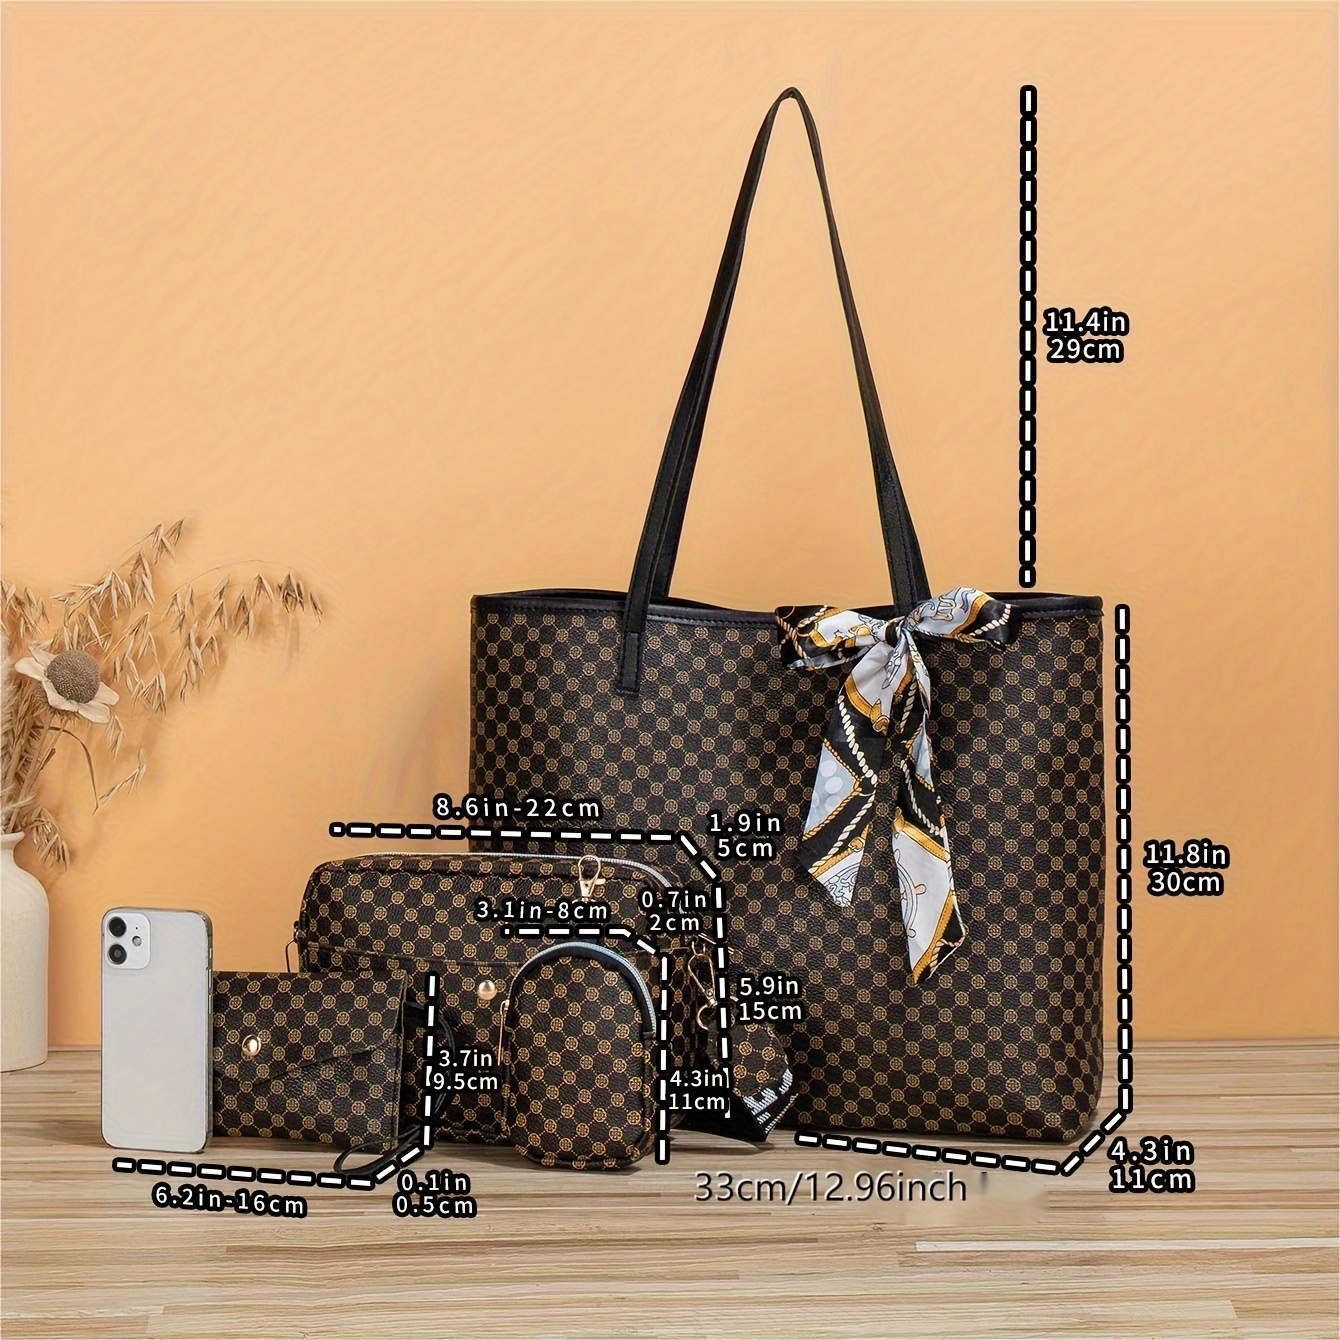 Four (4) Louis Vuitton Shopping Bags